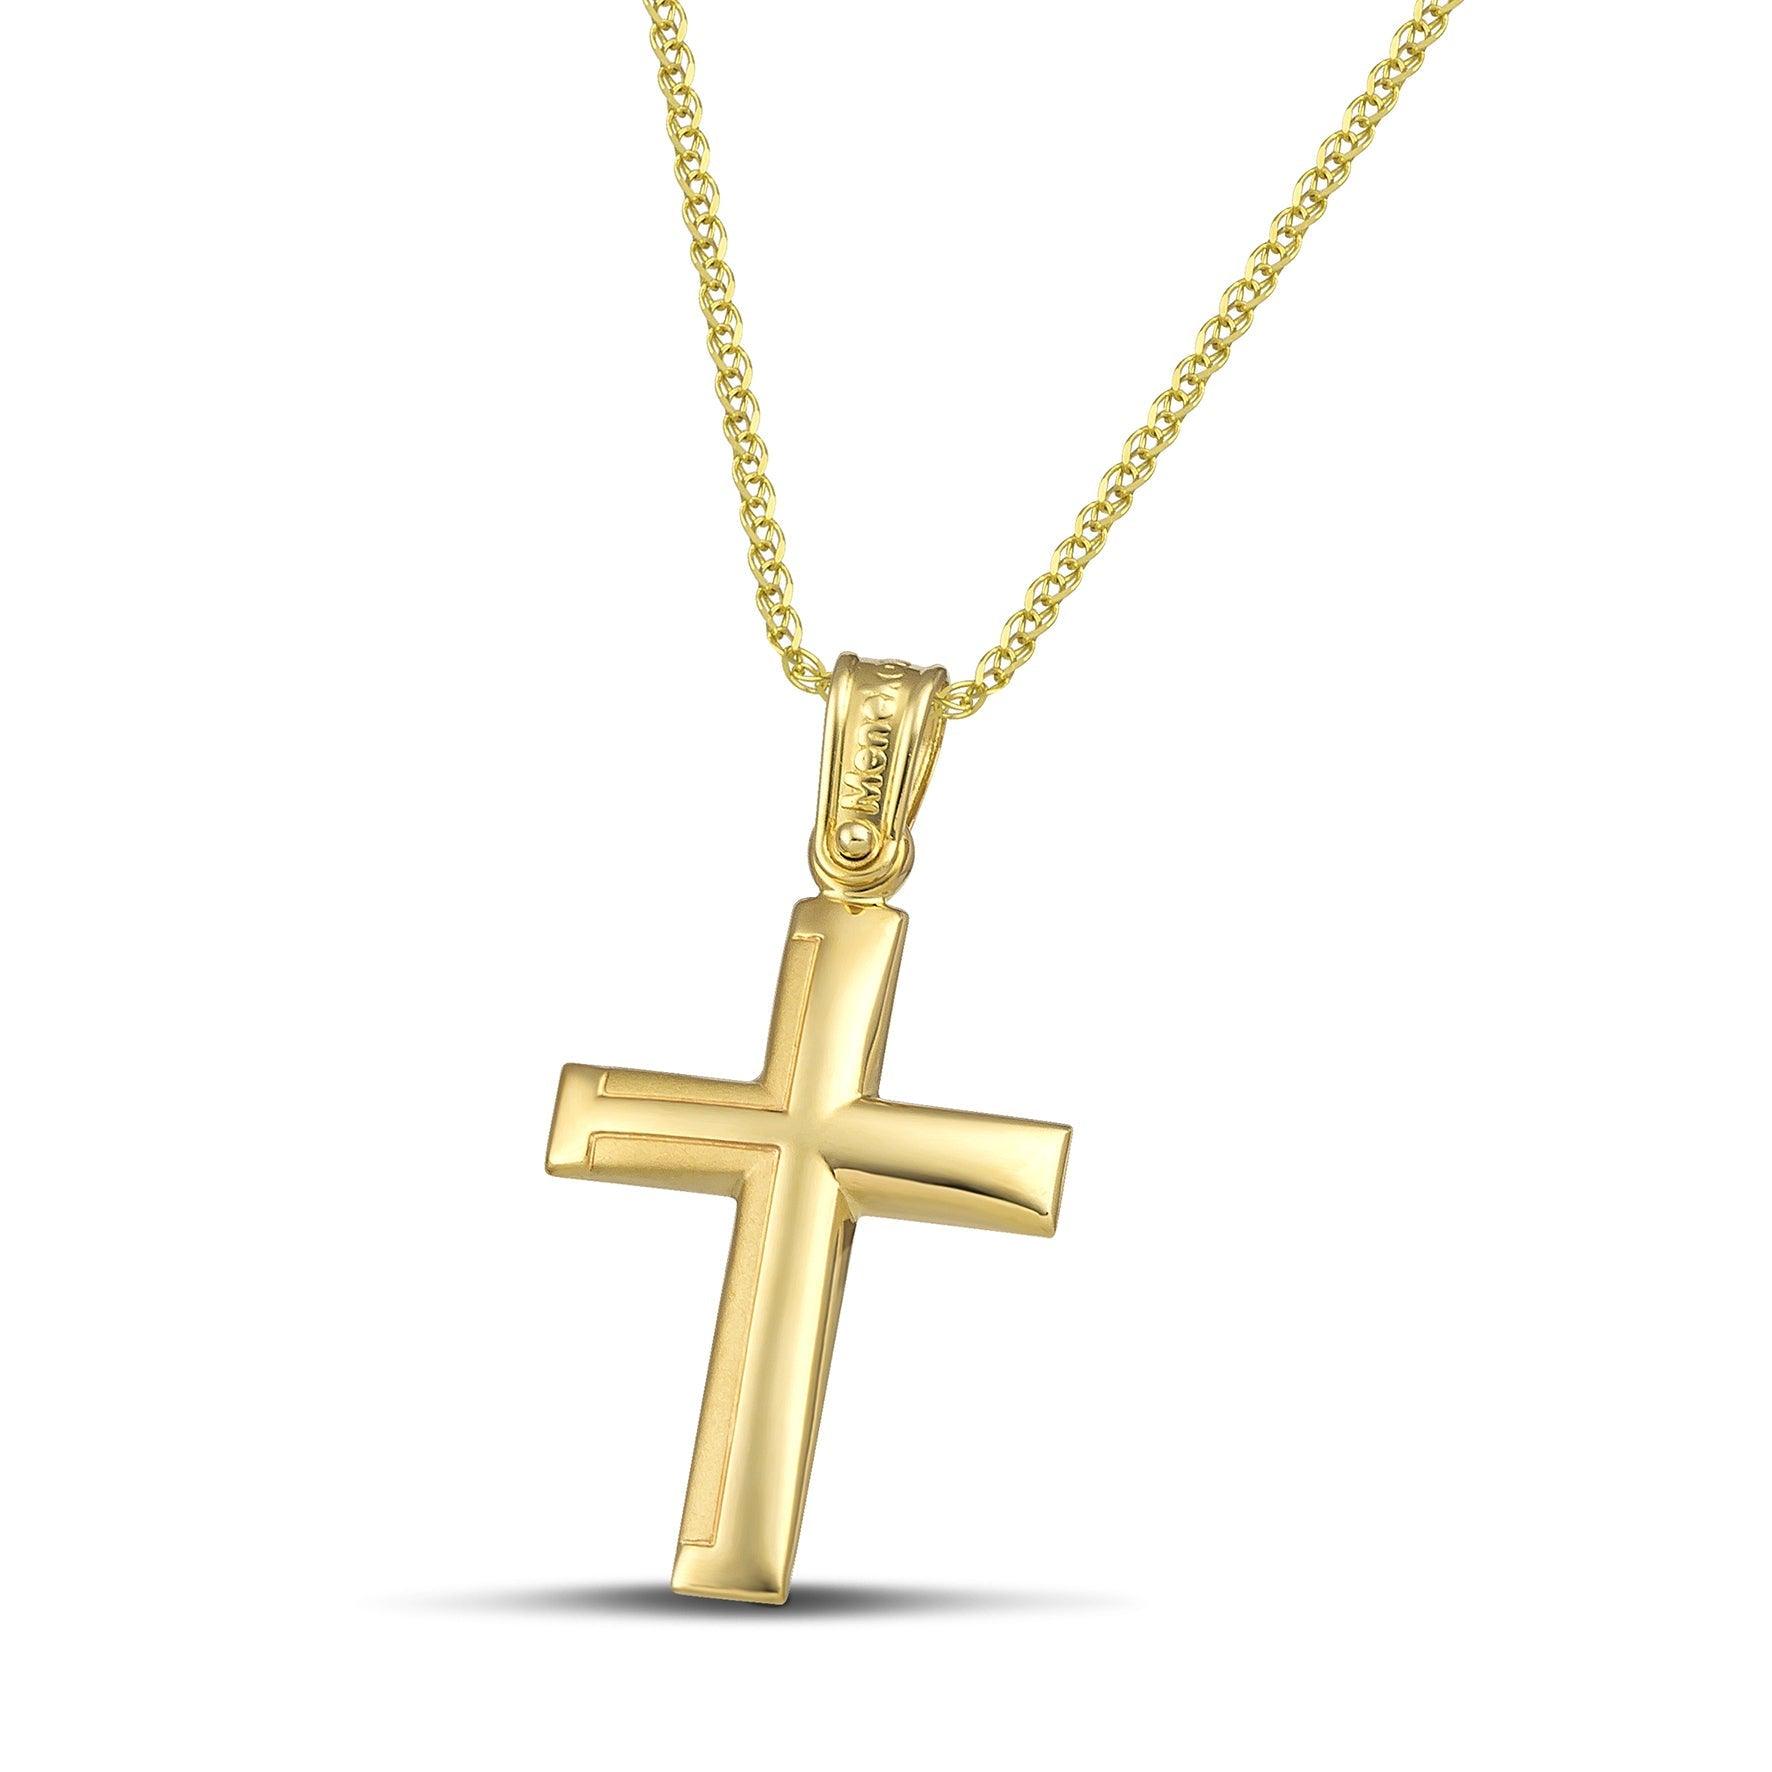 Ανδρικός σταυρός από χρυσό Κ14 με ματ. Χειροποίητο κόσμημα με λεπτή, πλεκτή αλυσίδα. 